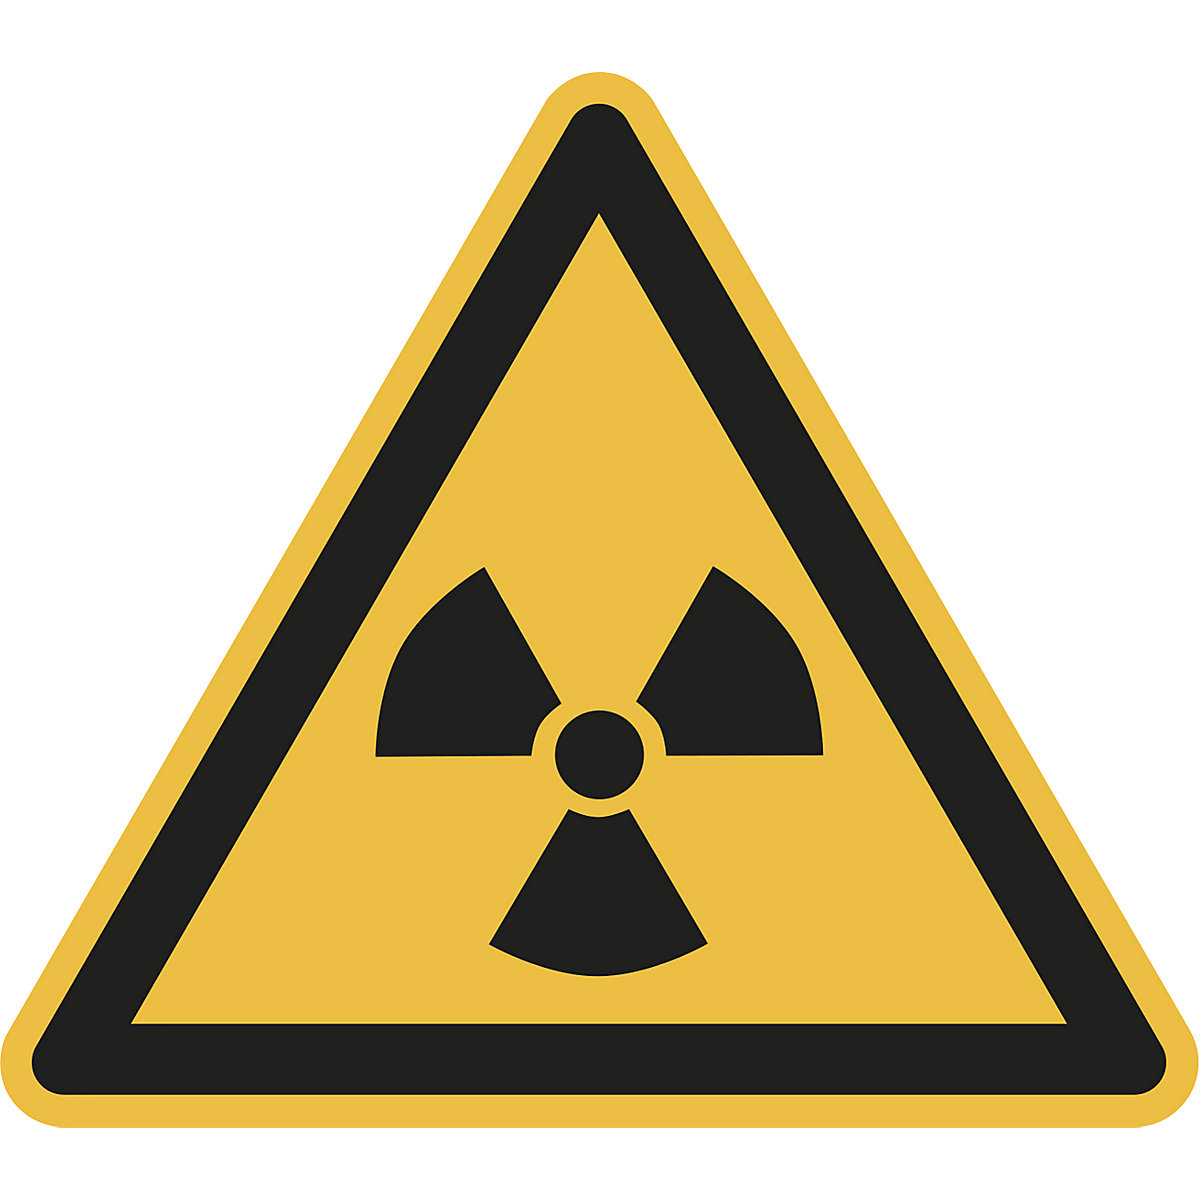 Figyelmeztető jel, figyelmeztetés radioaktív anyagokra vagy ionizáló sugárzásra, cs. e. 10 db, fólia, szárhossz 200 mm-2